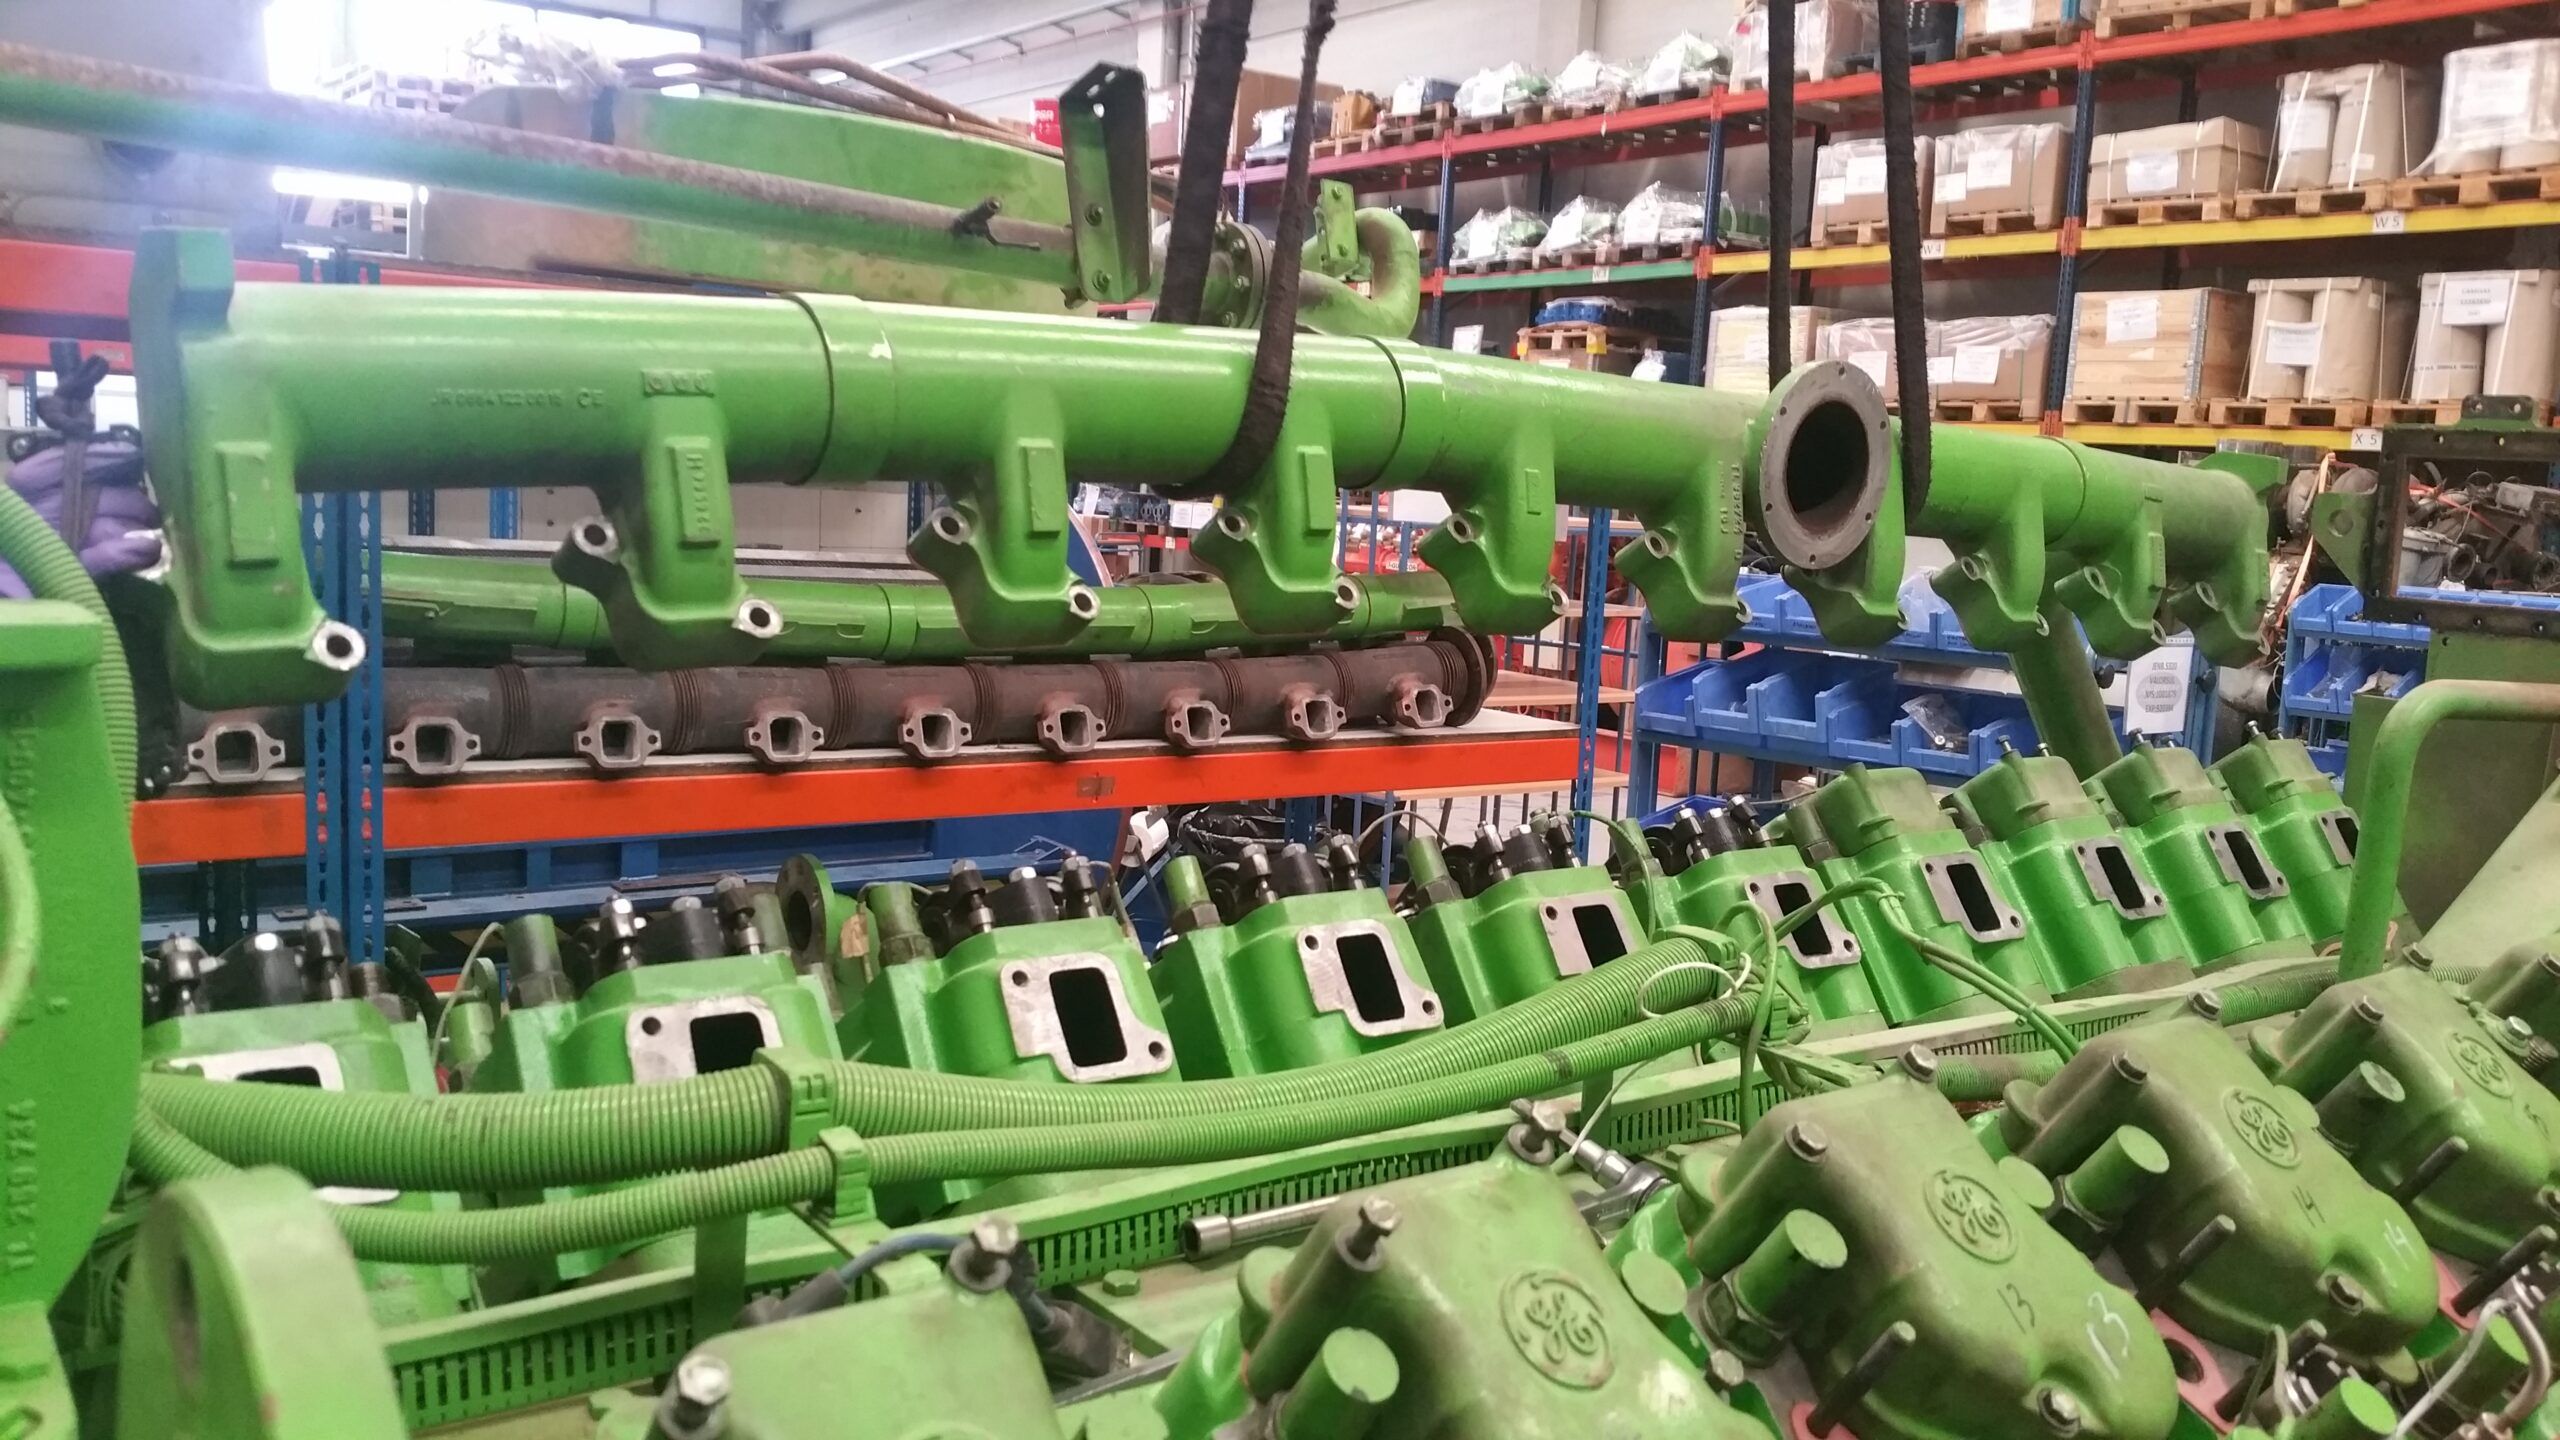 Reparación de motores de gas Jenbacher